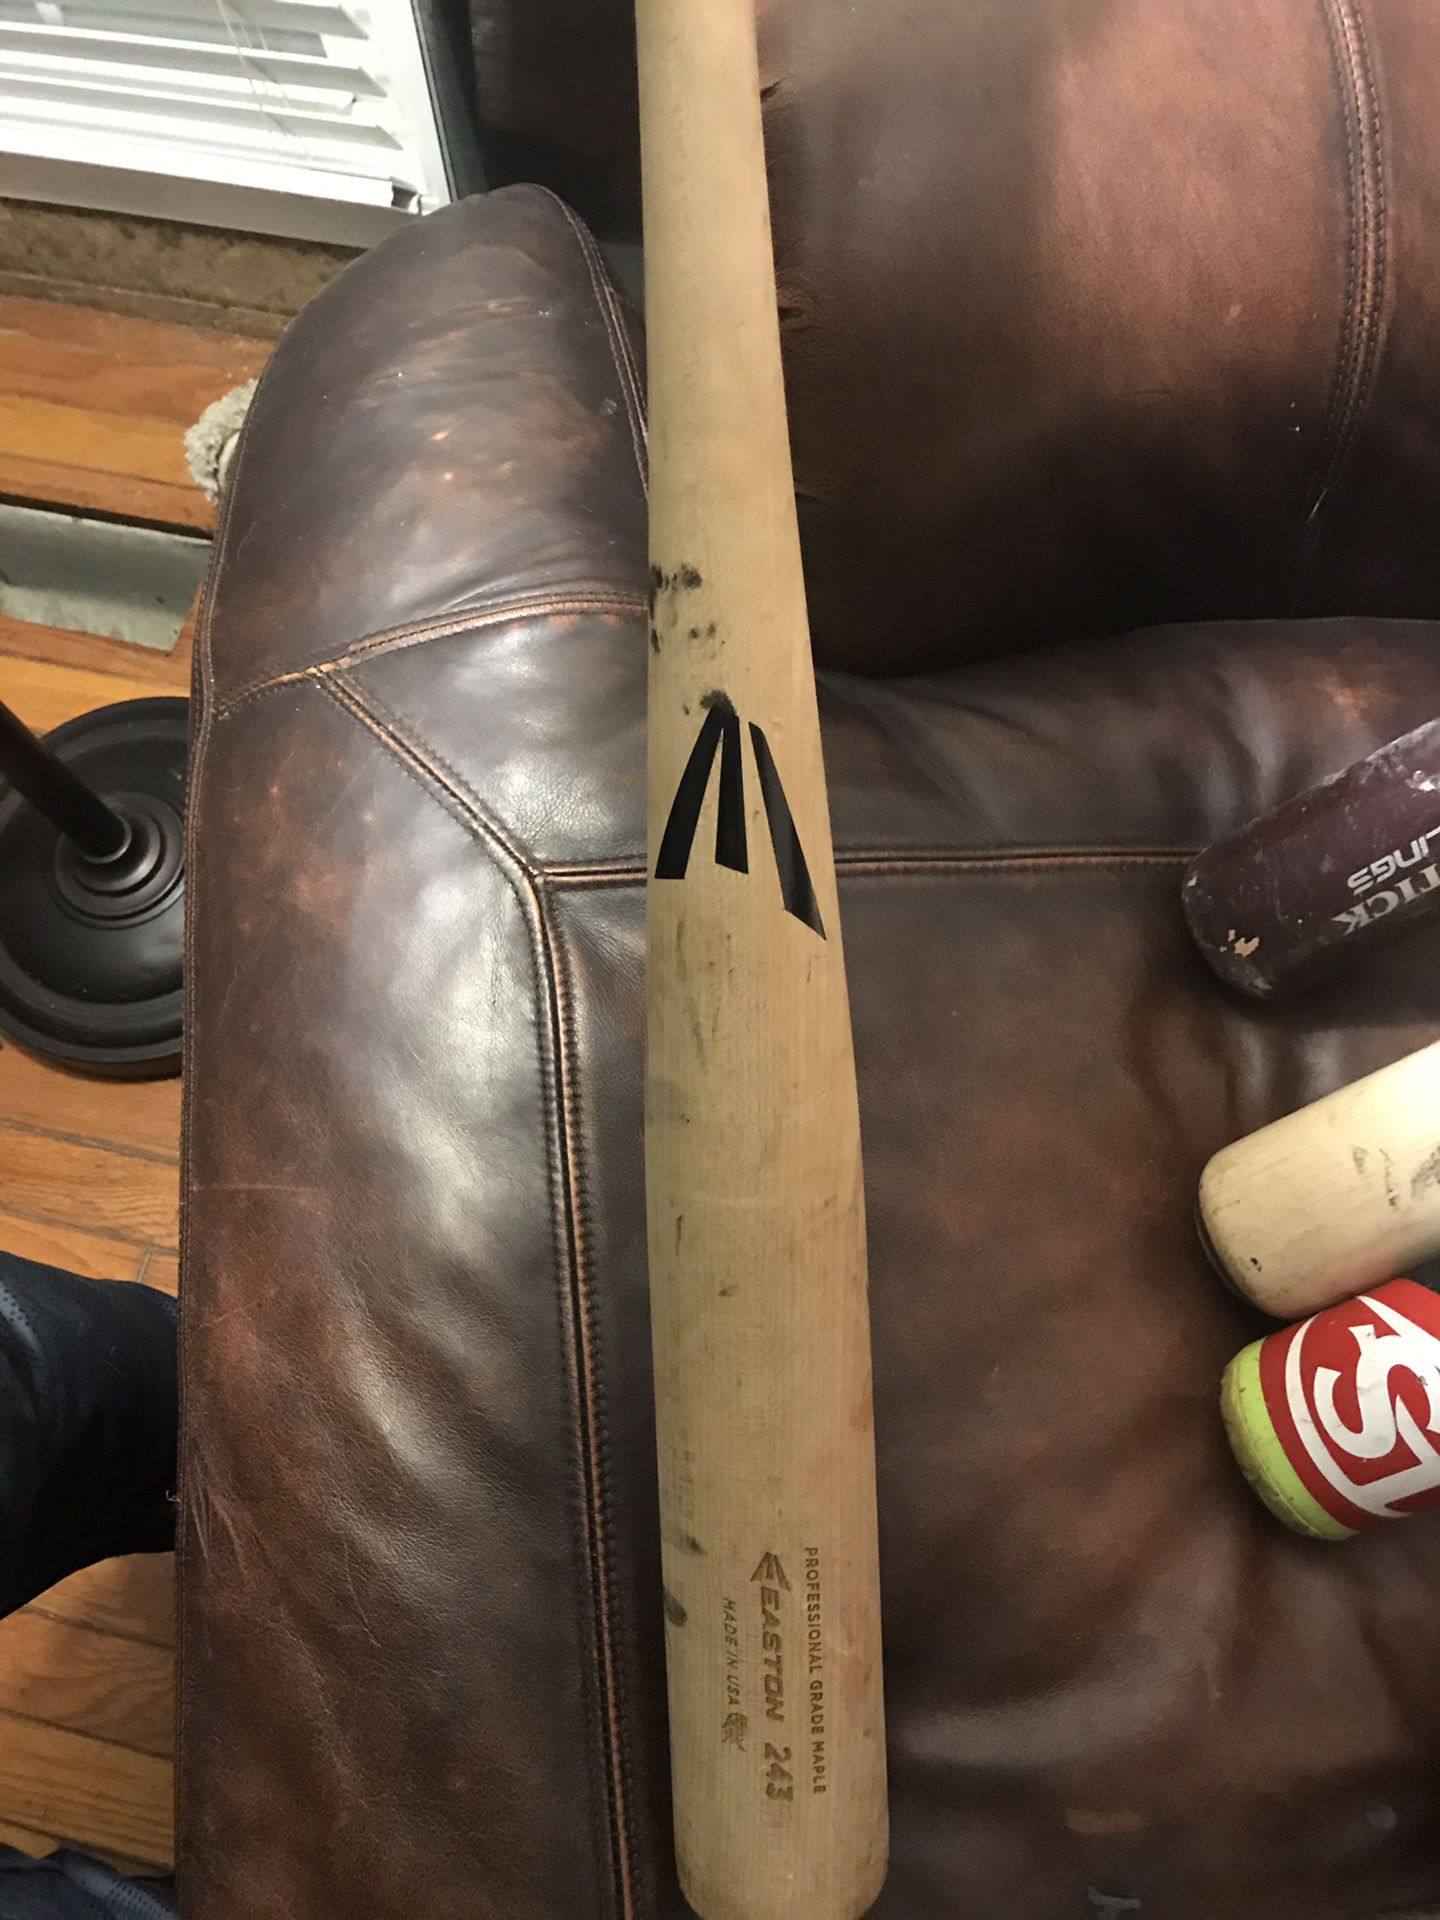 Baseball bat